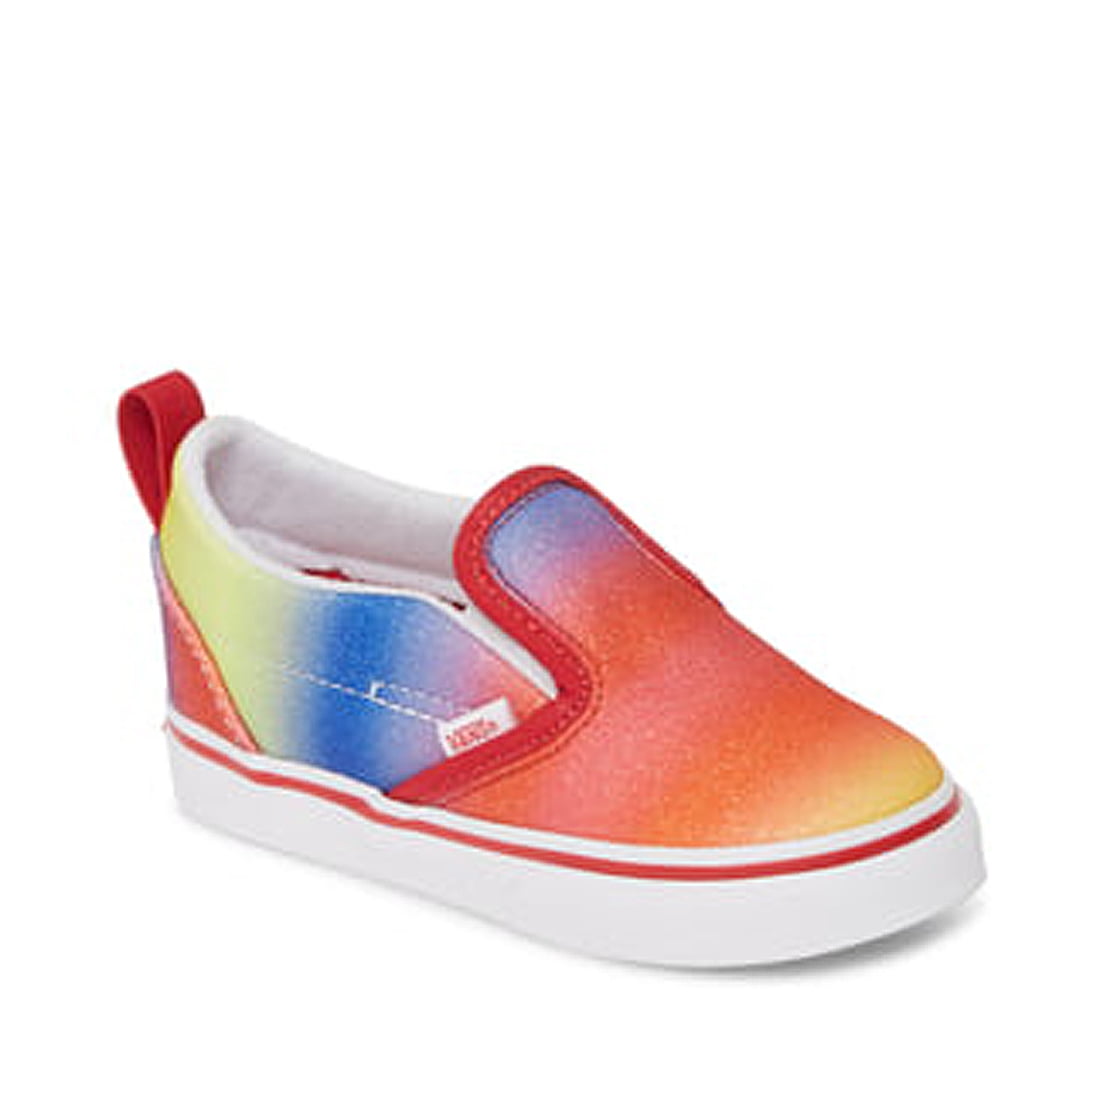 Vans Slip-On Girls/Toddler Shoe Size 9 